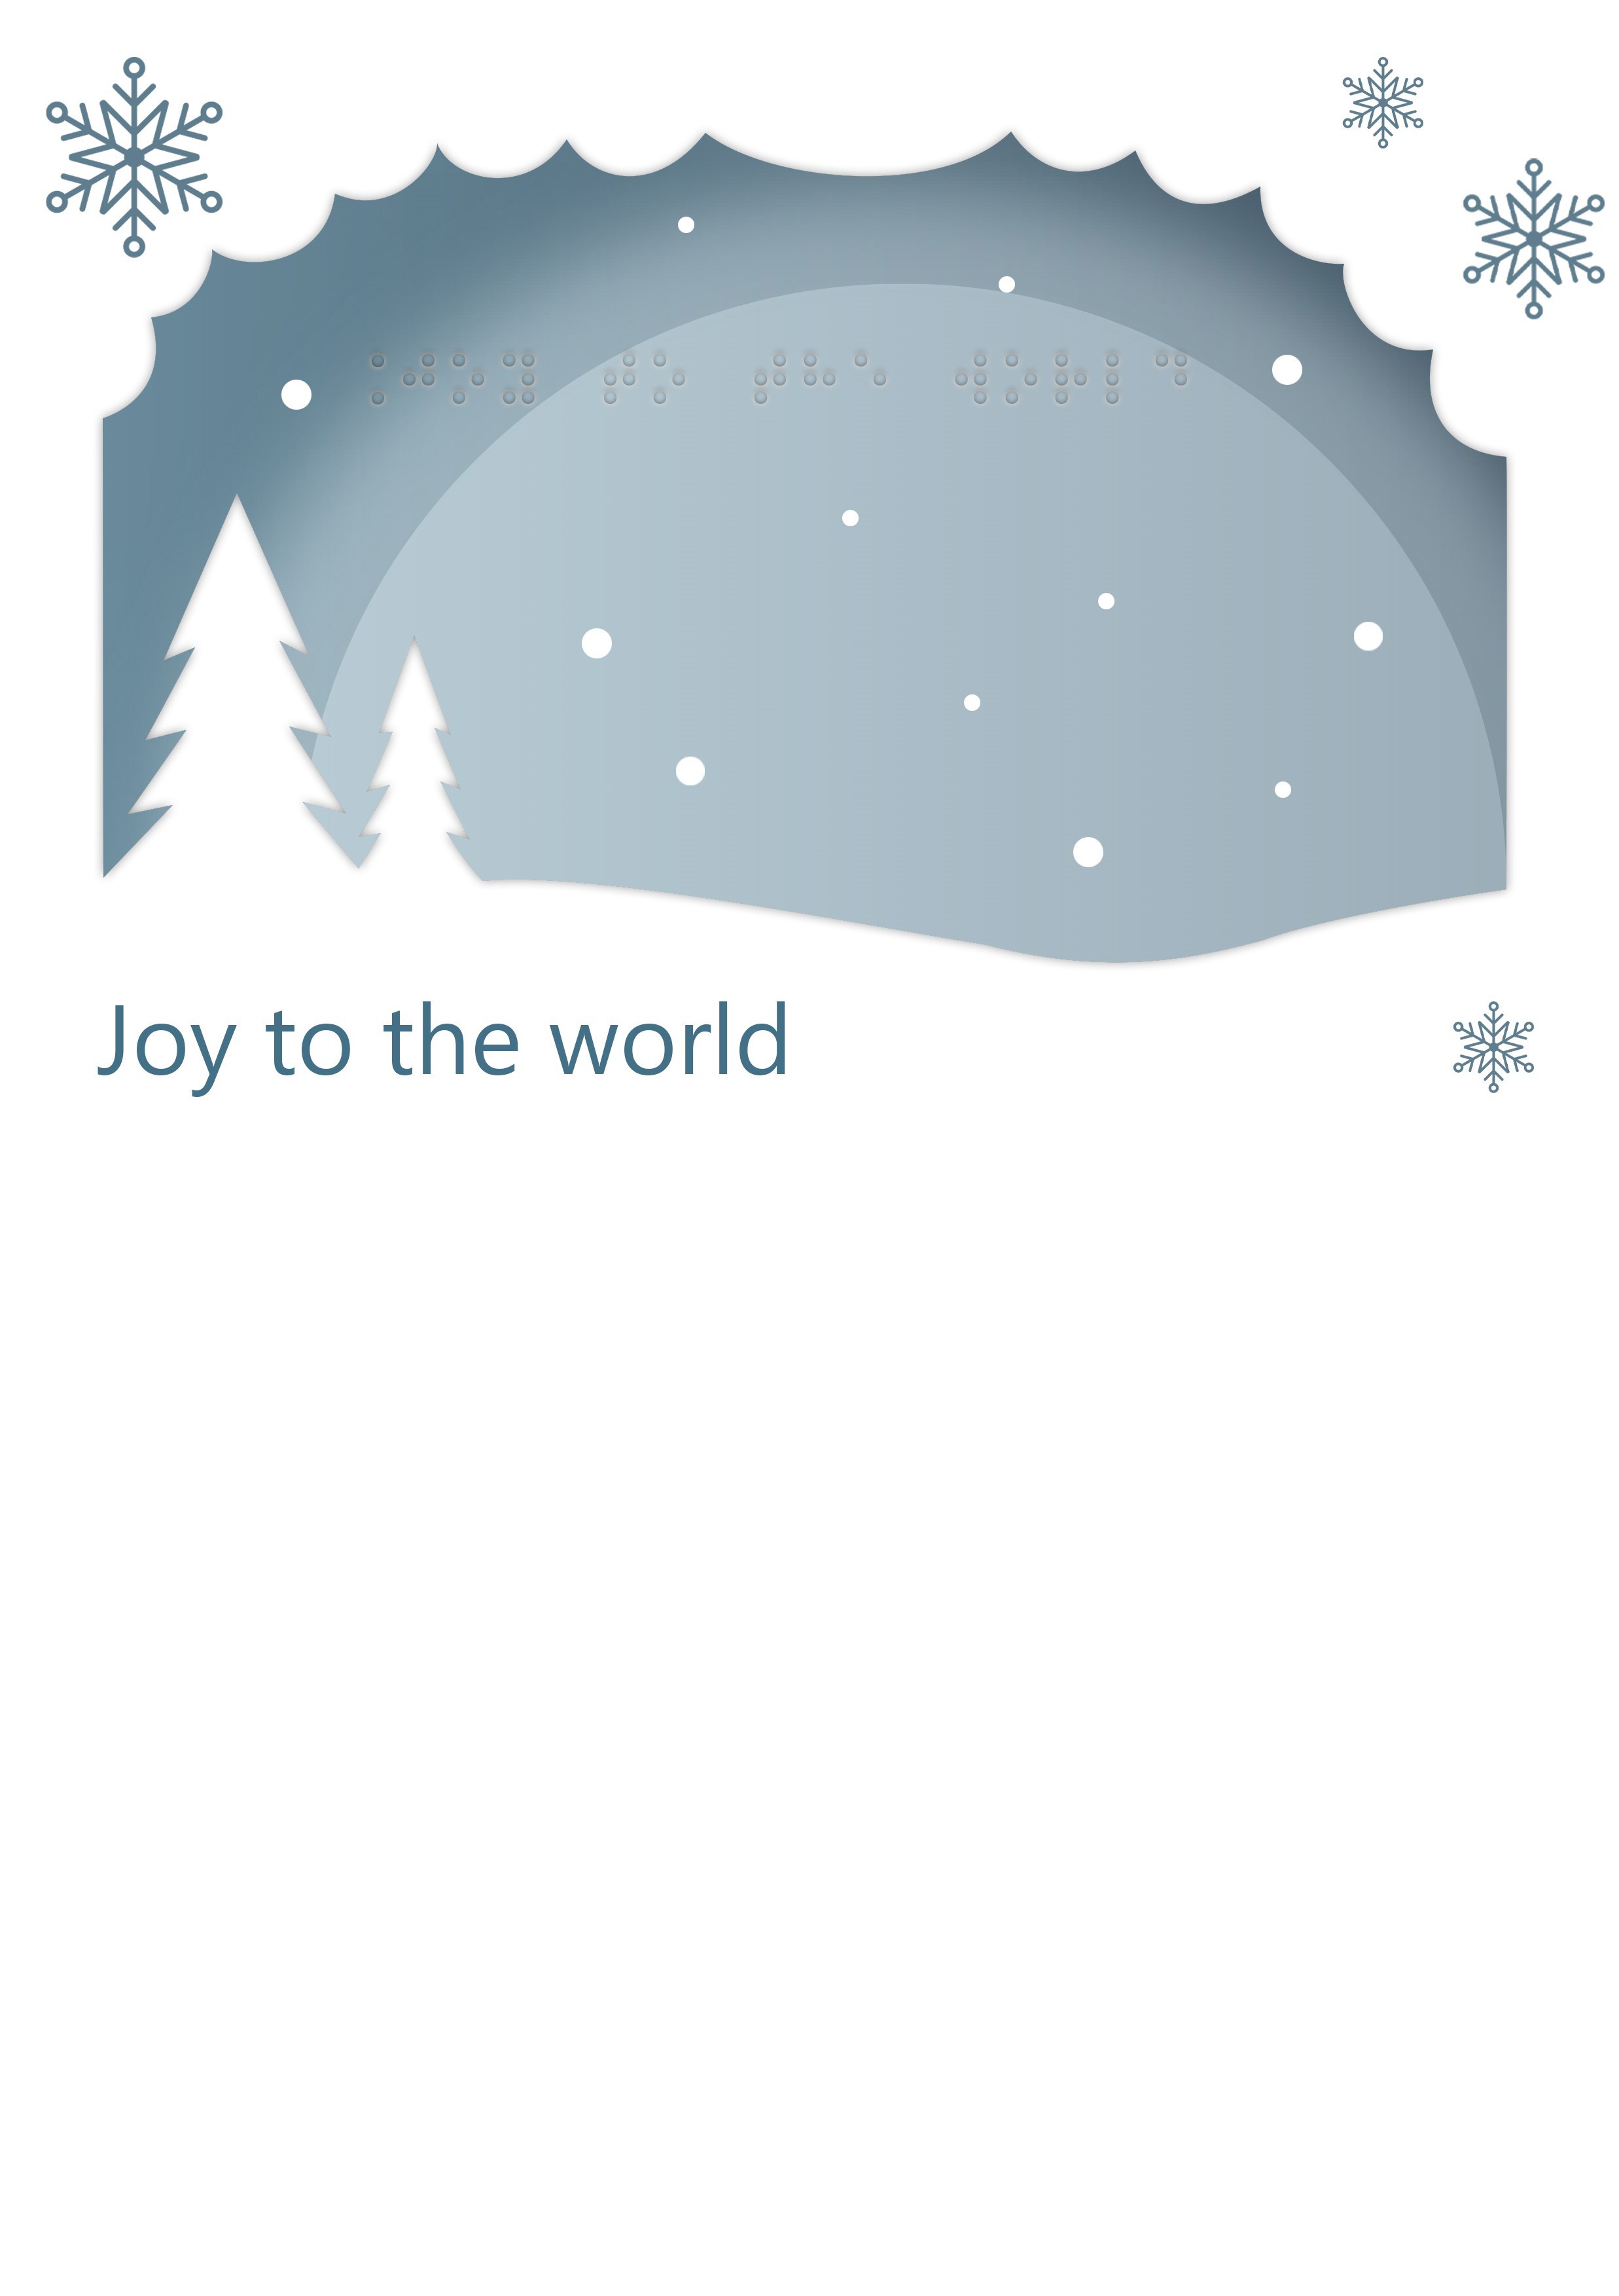 Voelbare wenskaart met braille en reliëf. In braille de tekst: Immanuël, God met ons. Met een voelbare afbeelding van een kerstboom gemaakt van sterren.